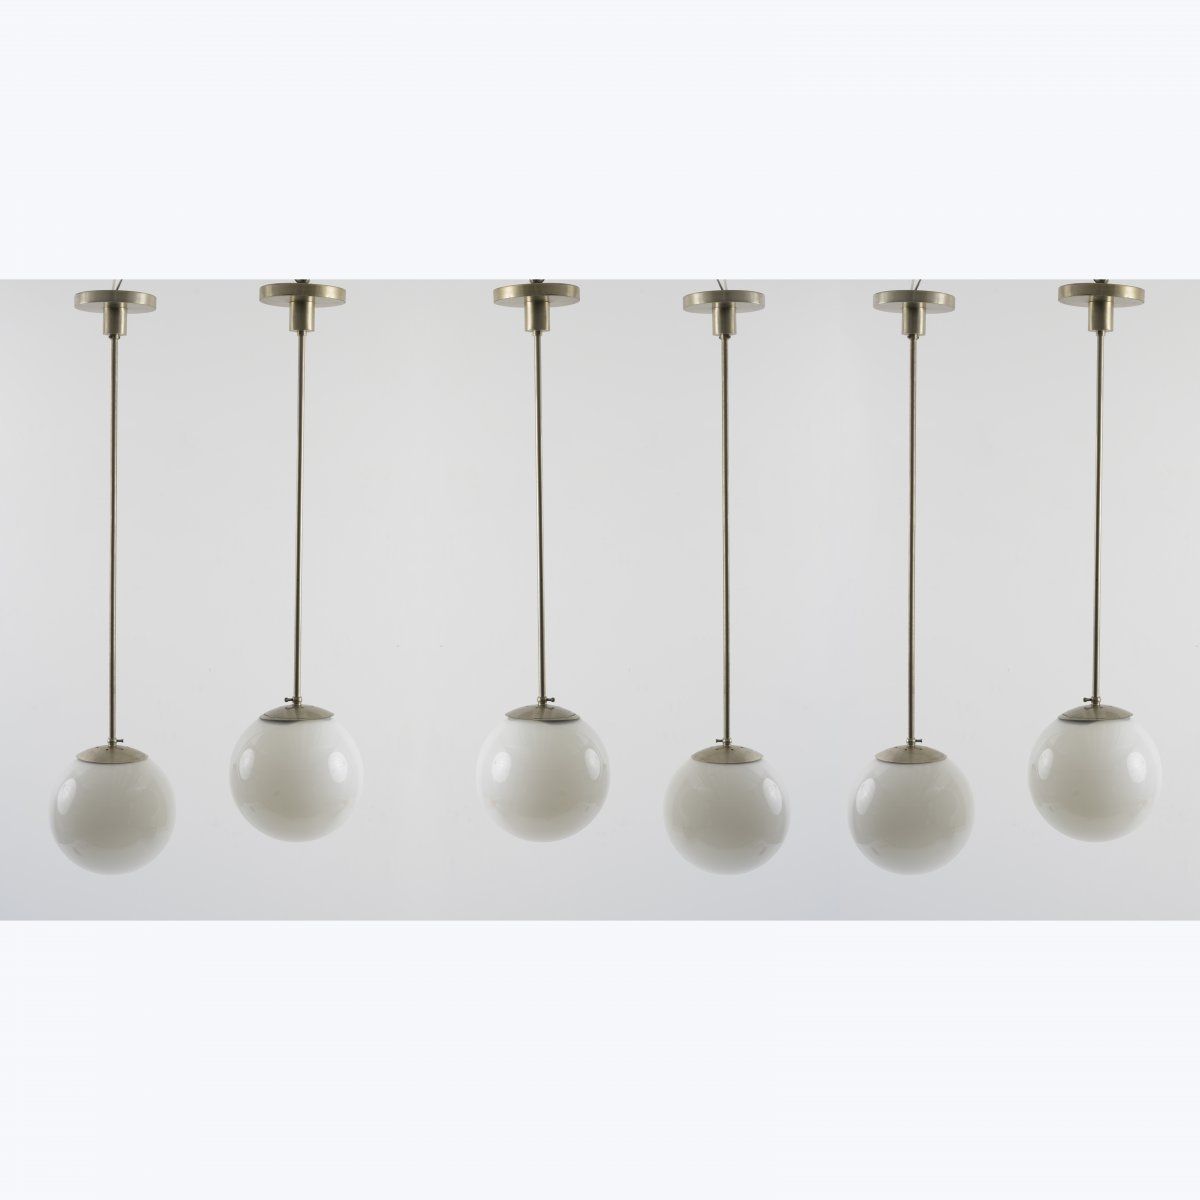 Null 德国，6盏天花板灯，1930年代，高110厘米，长27厘米。管状金属，金属板，镀镍，白色玻璃。